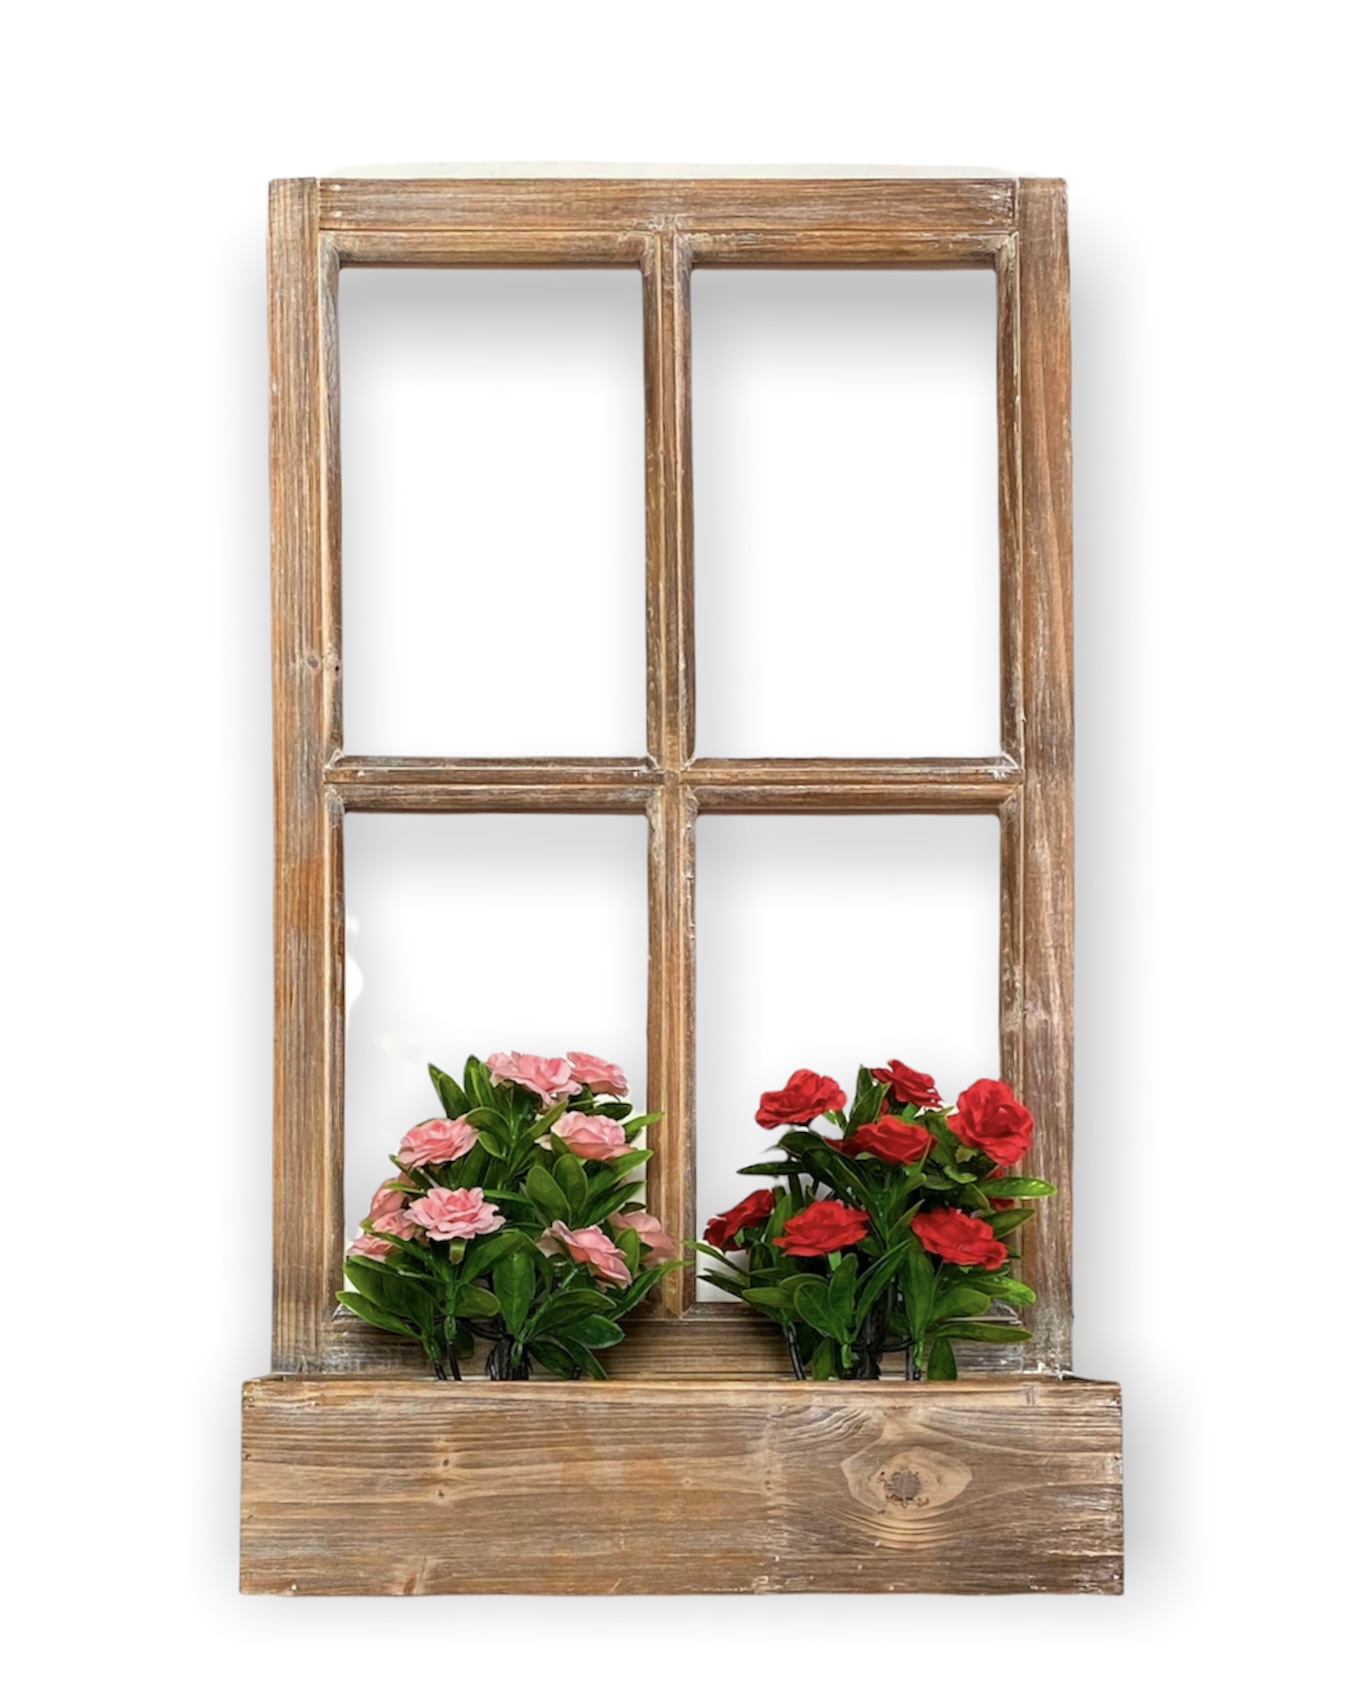 DanDiBo Wandblumenhalter Fenster 70 cm Blumenkasten aus Holz Wandregal Blumenständer Braun 461080 Blumenregal Regal